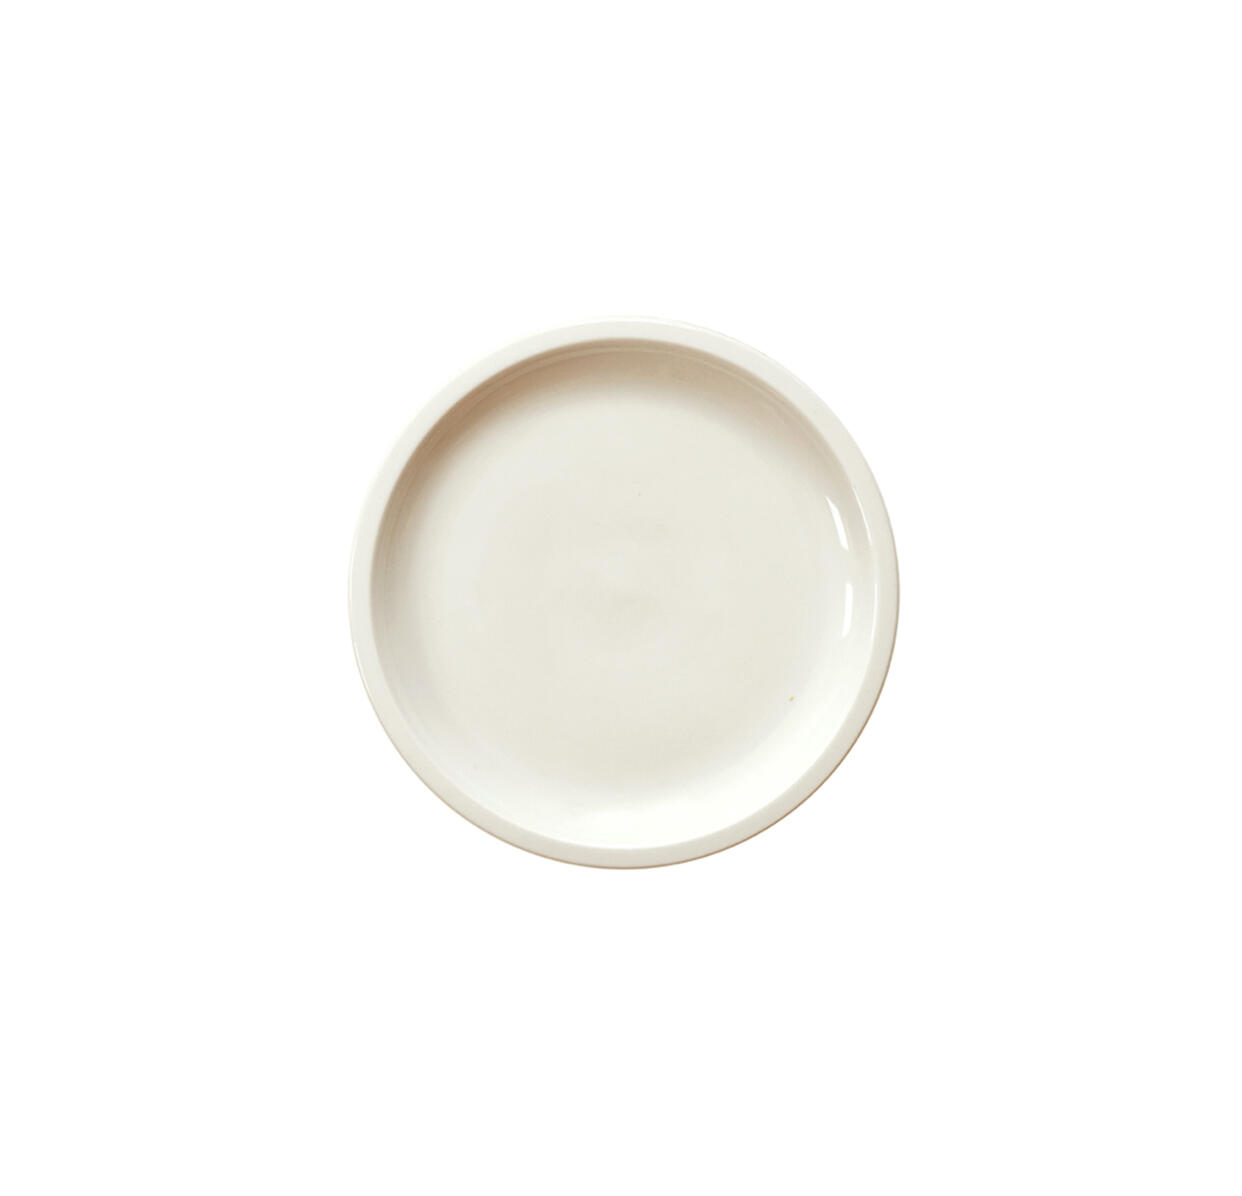 plate xxs cantine craie ceramic manufacturer